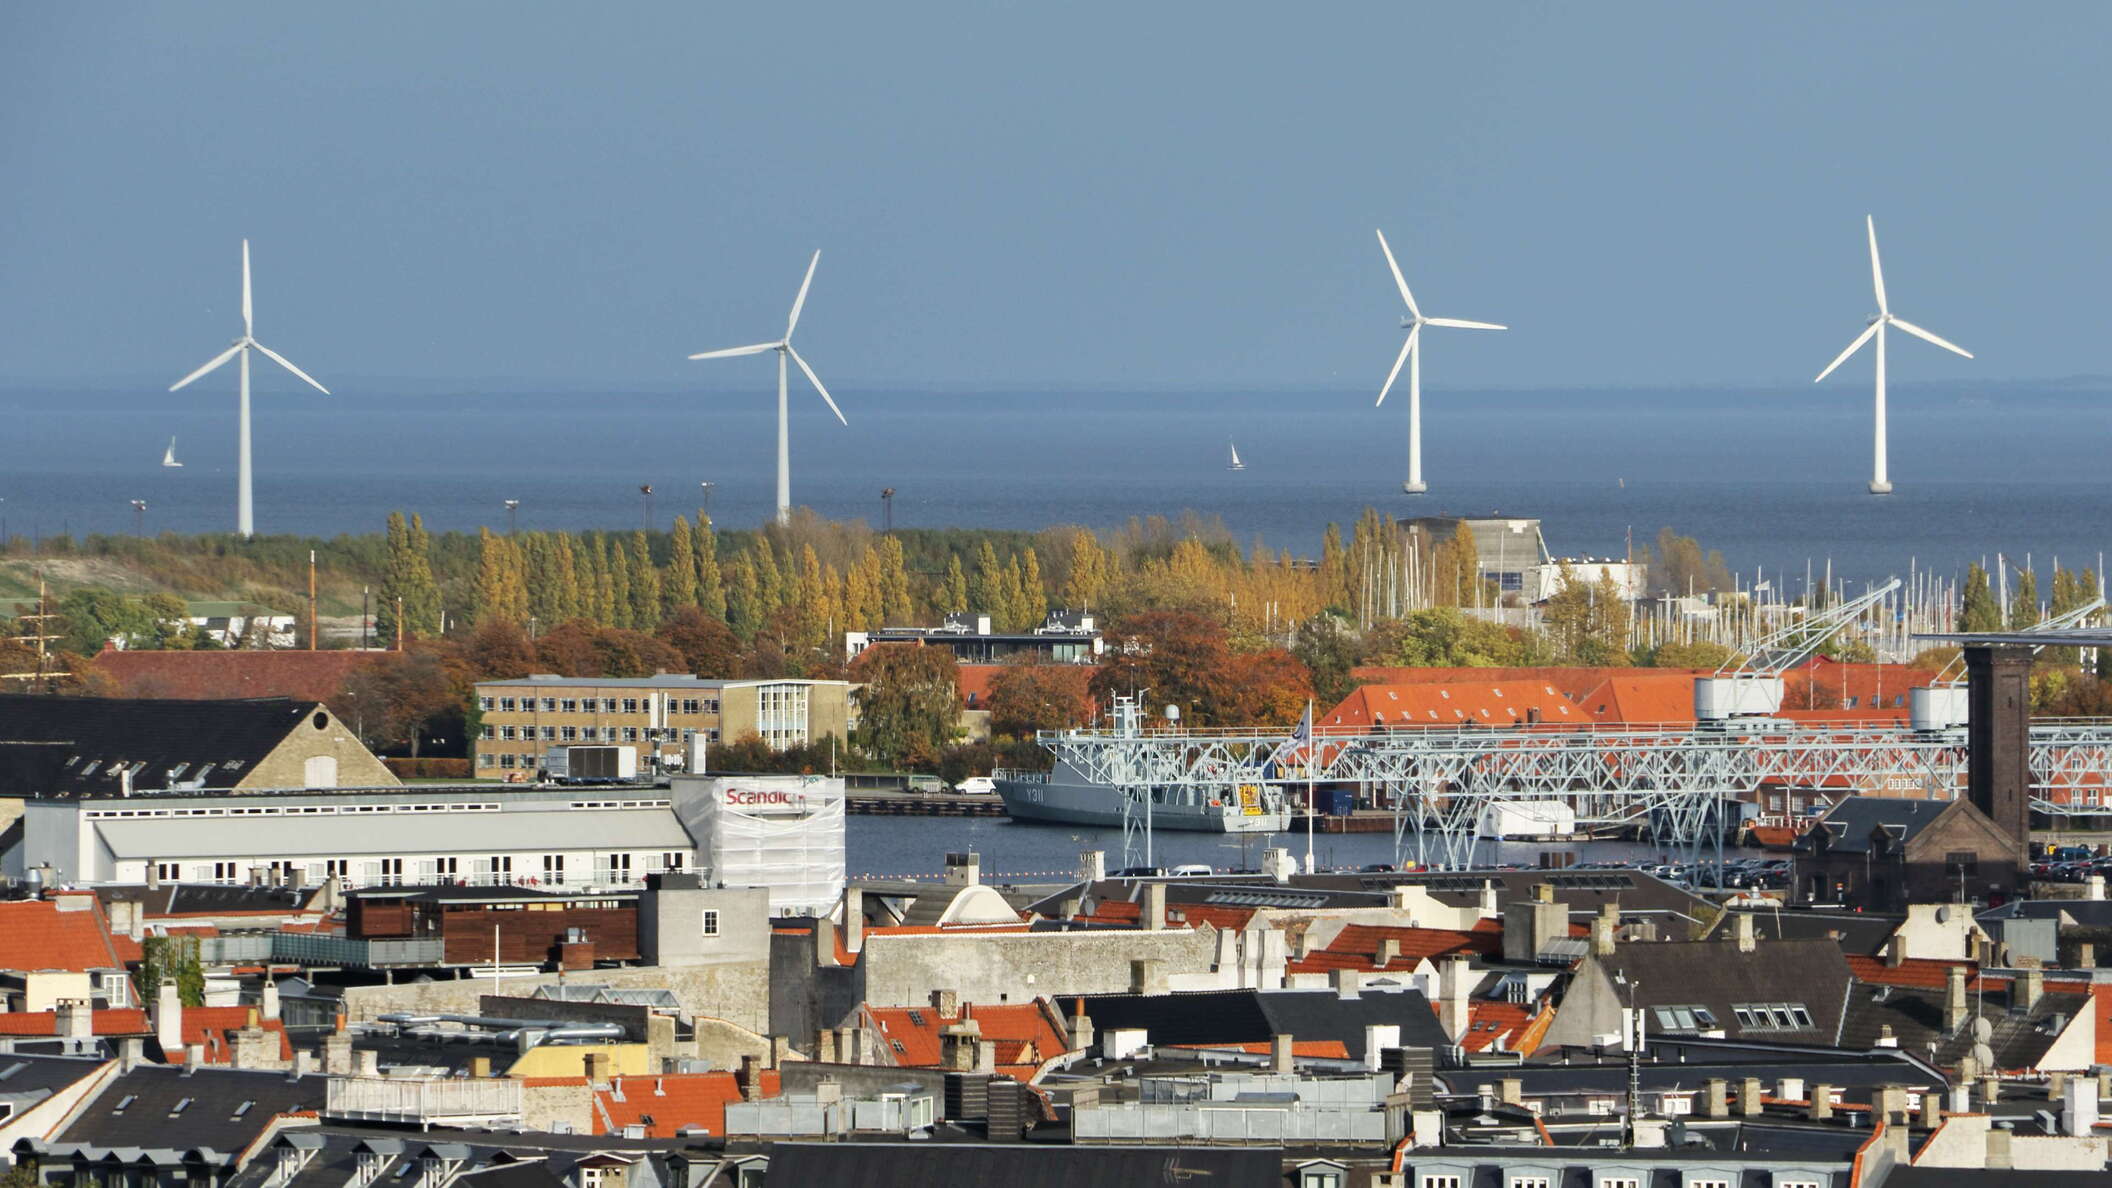 København |  Øresund with wind park